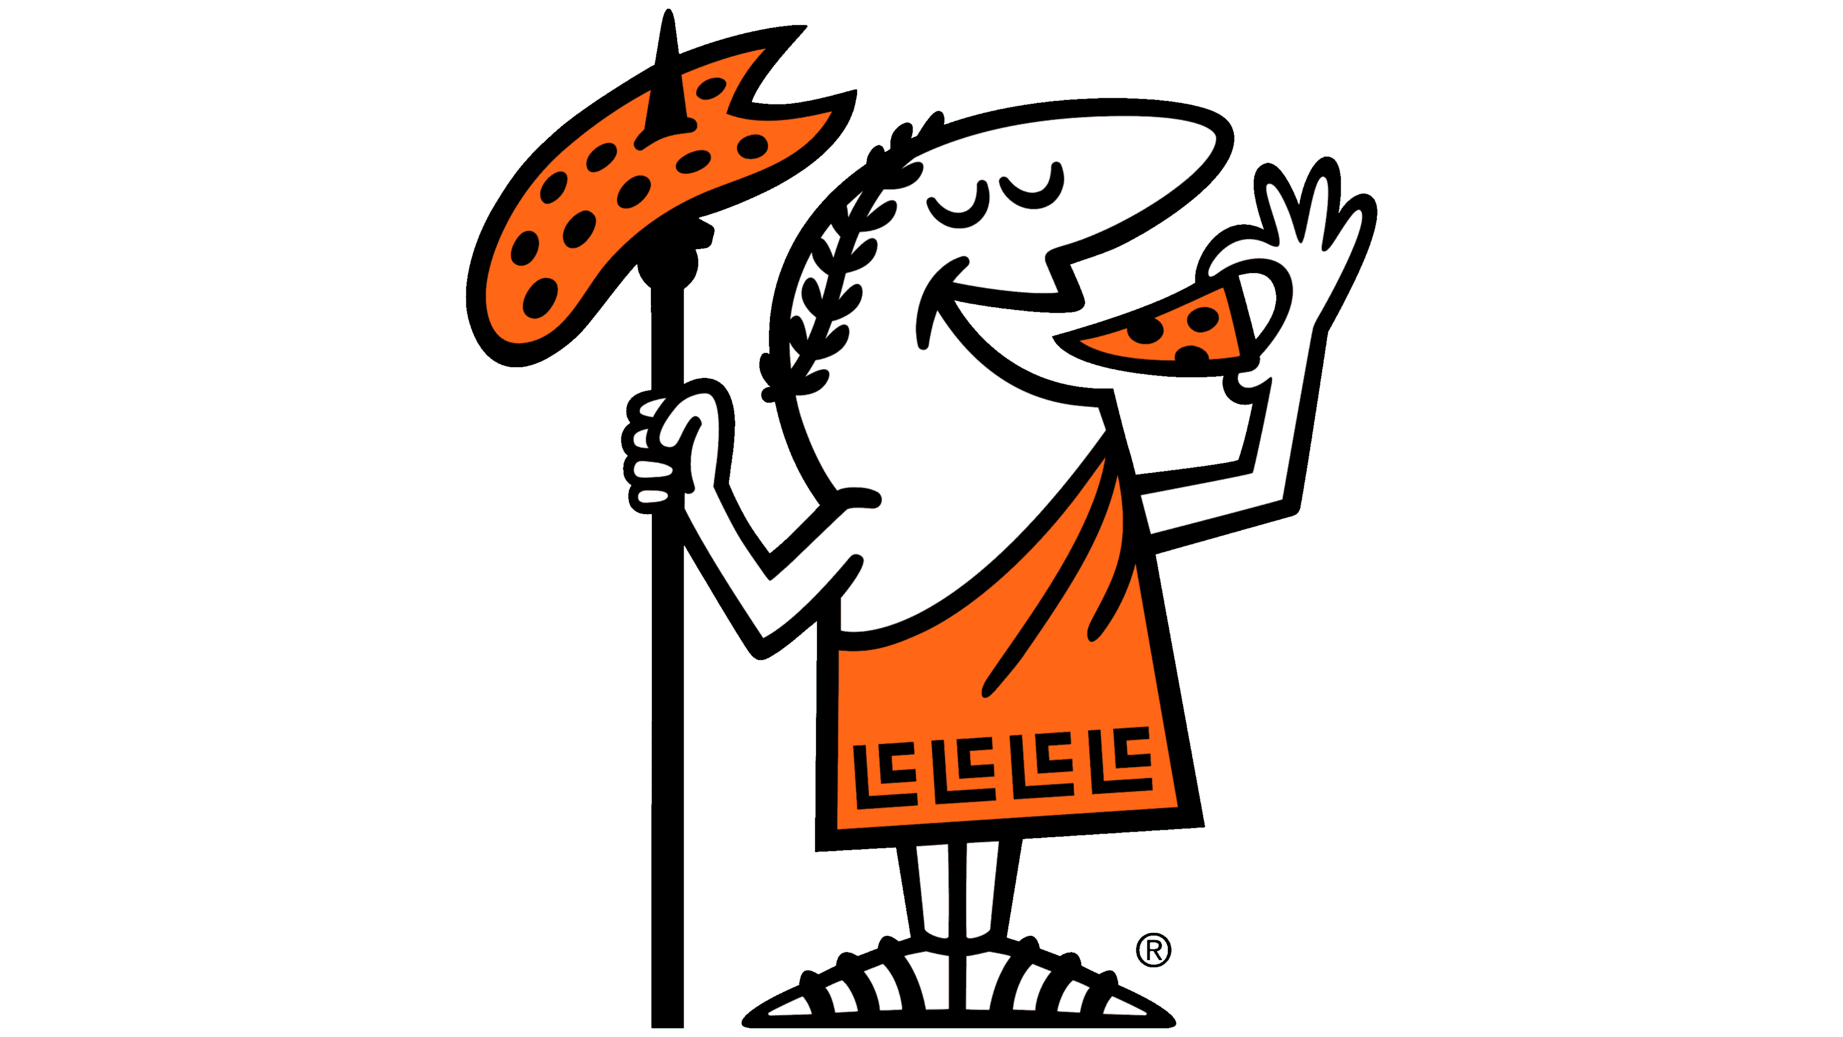 Little caesars logo